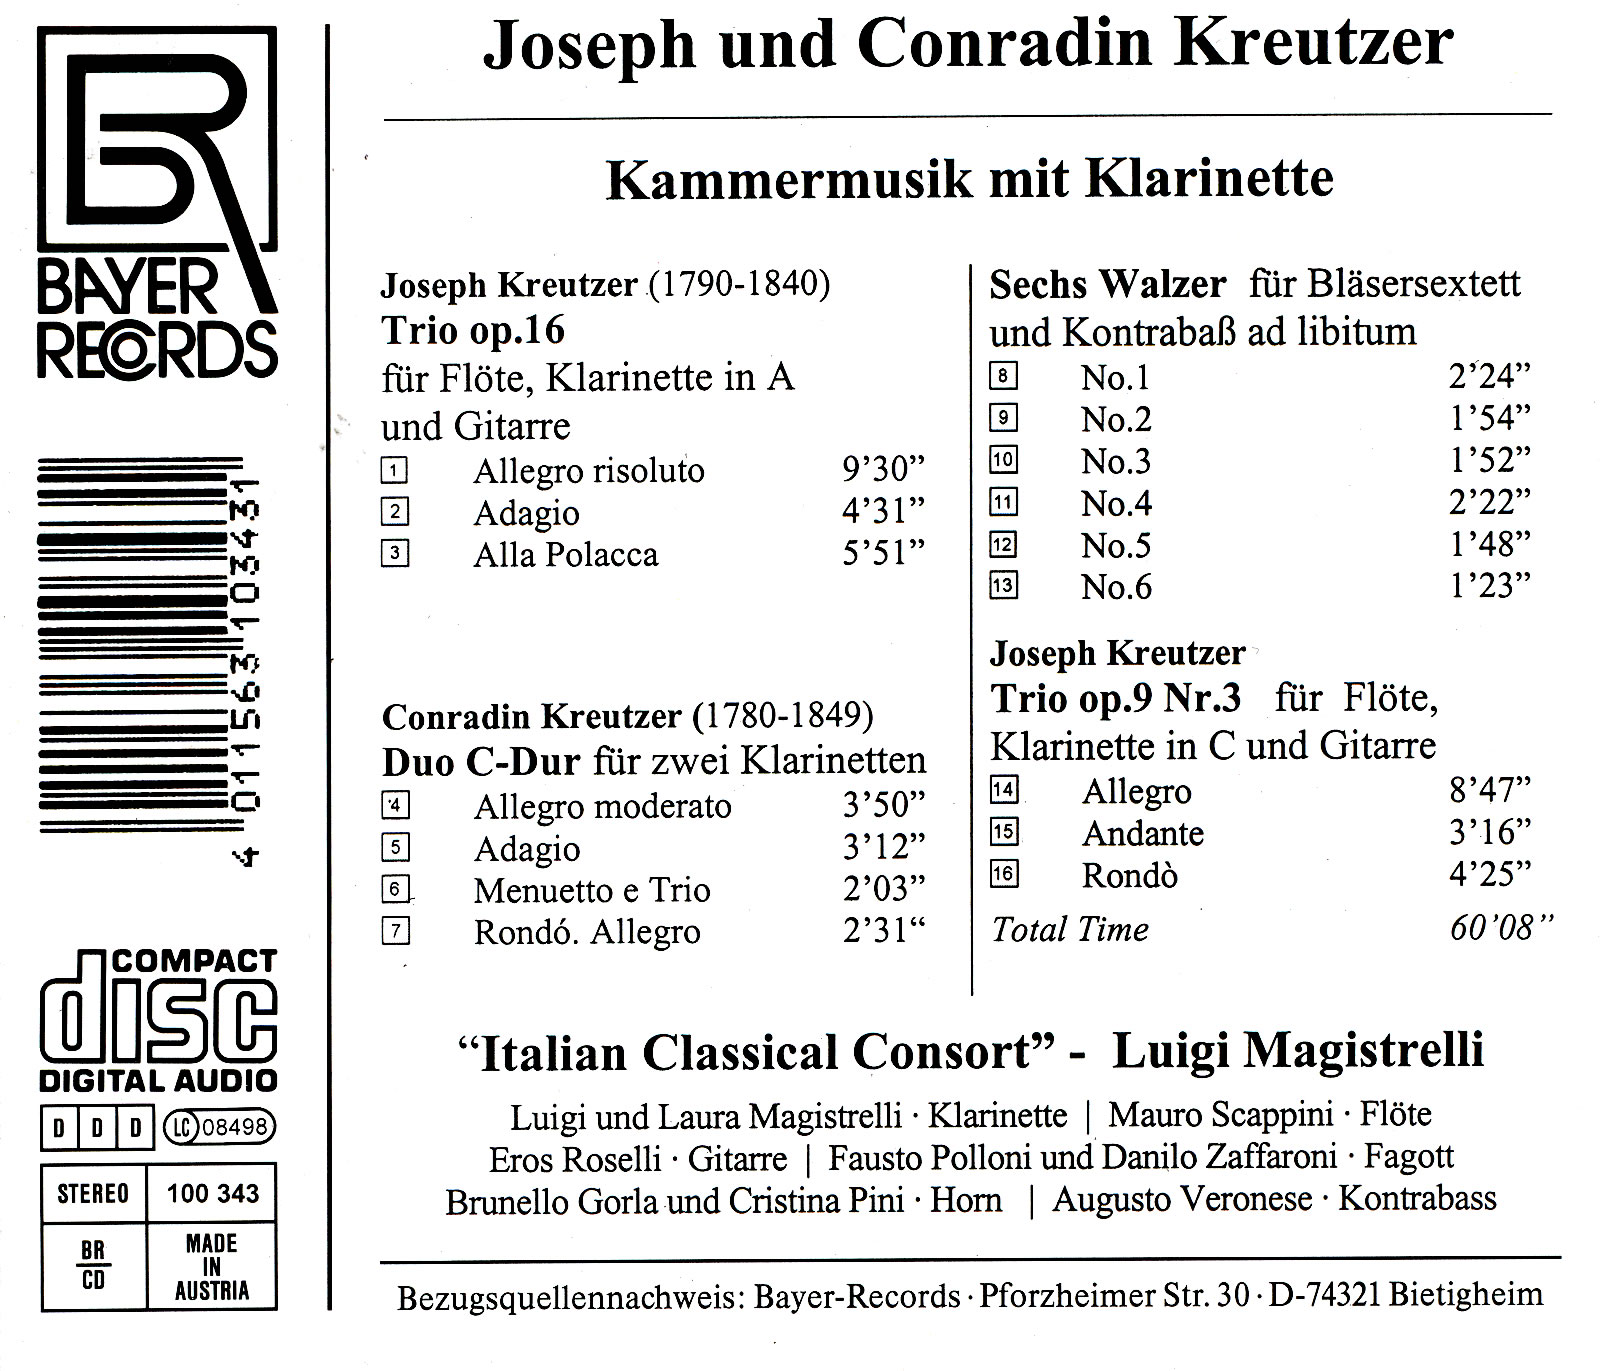 Joseph und Conradin Kreutzer - Kammermusik mit Klarinette